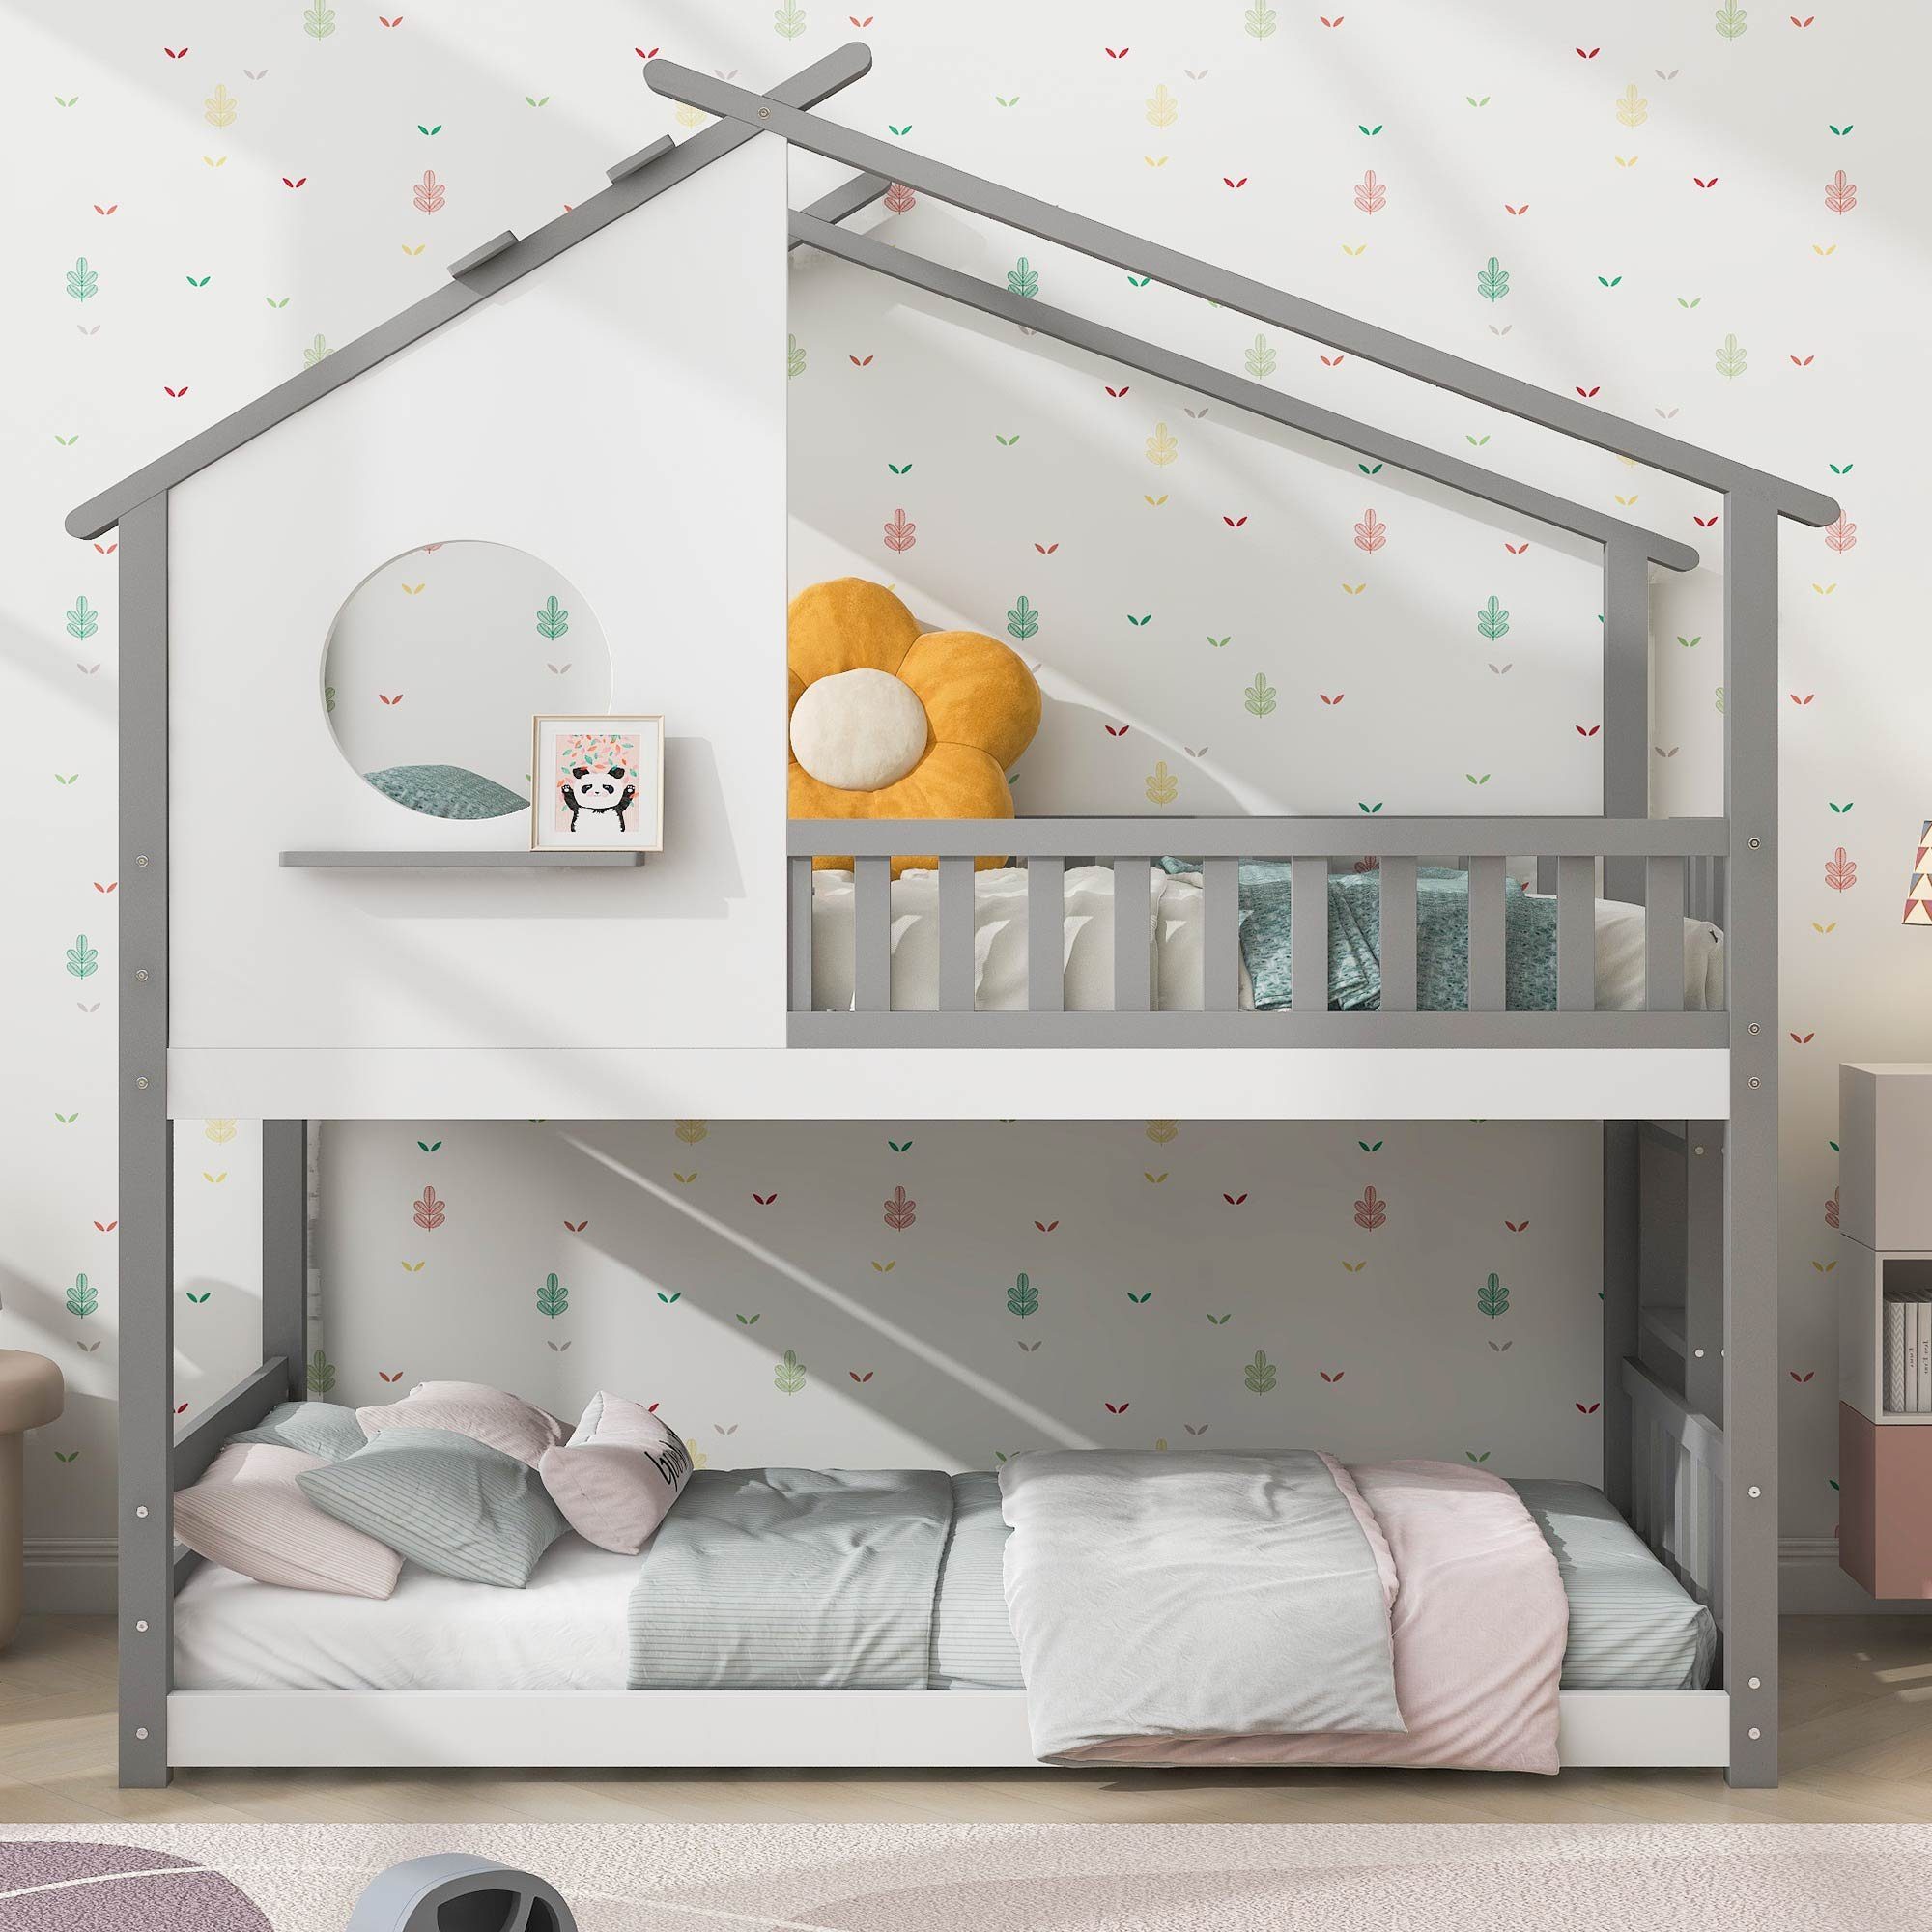 Ulife Kinderbett Hausbett, Etagenbett in Eiche hell & weiß mit Leiter & 2 Liegeflächen (Packung, 1 Bett), Mit einem dreieckigen Dach Grau & Weiß | Grau